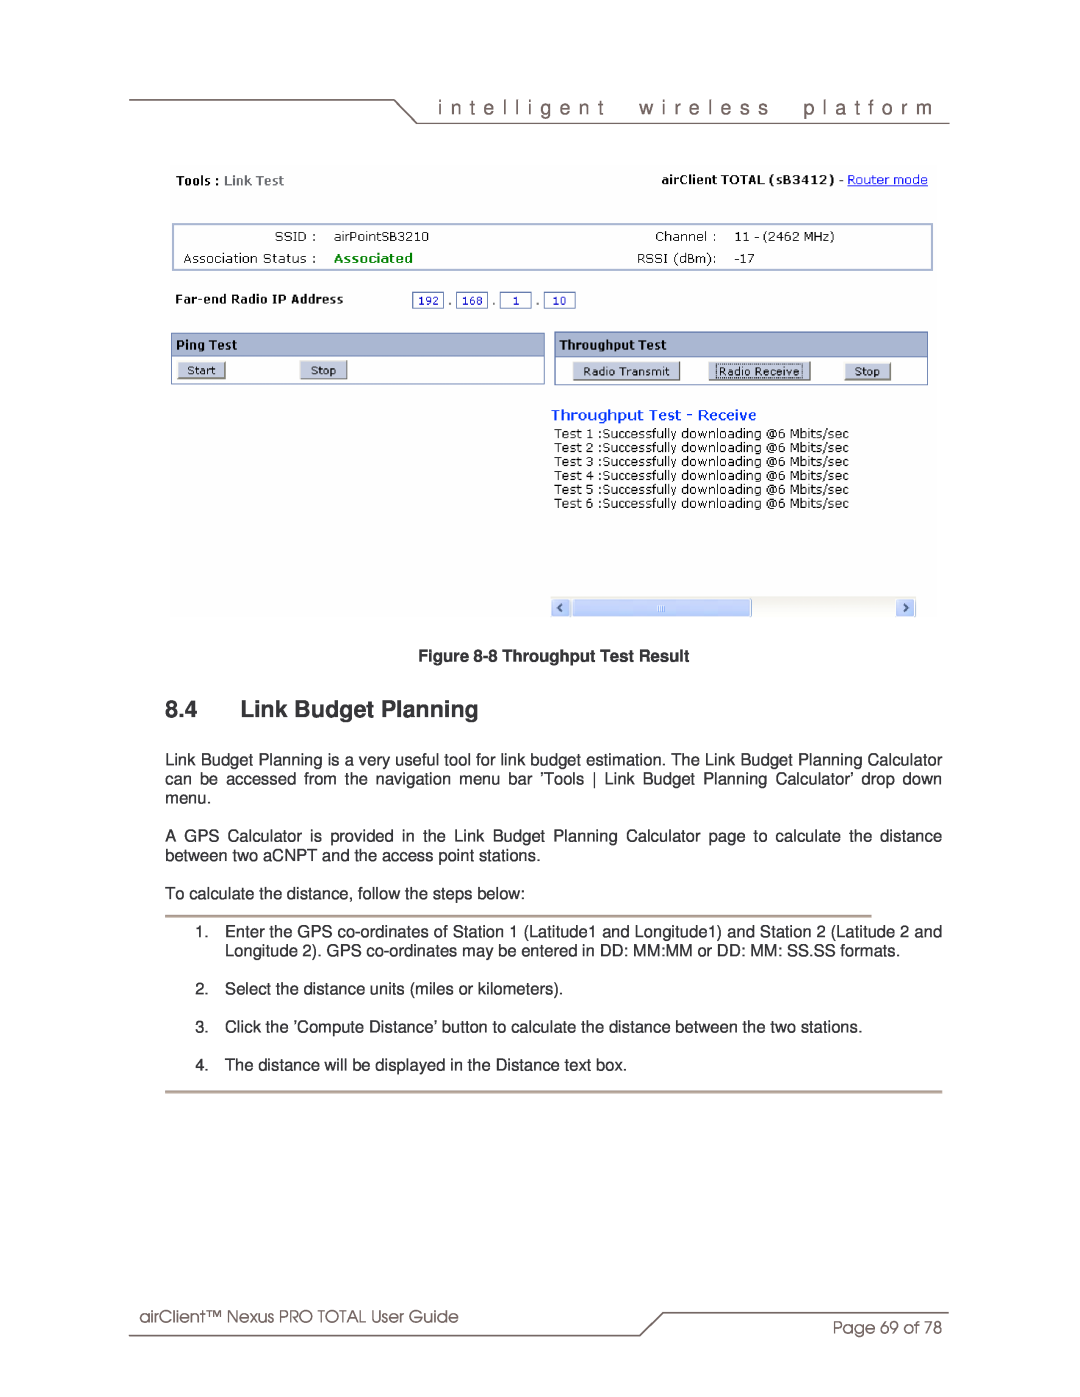 SmartBridges sB3412 manual 8.4Link Budget Planning, i n t e l l i g e n t, w i r e l e s s, p l a t f o r m, Page 69 of 